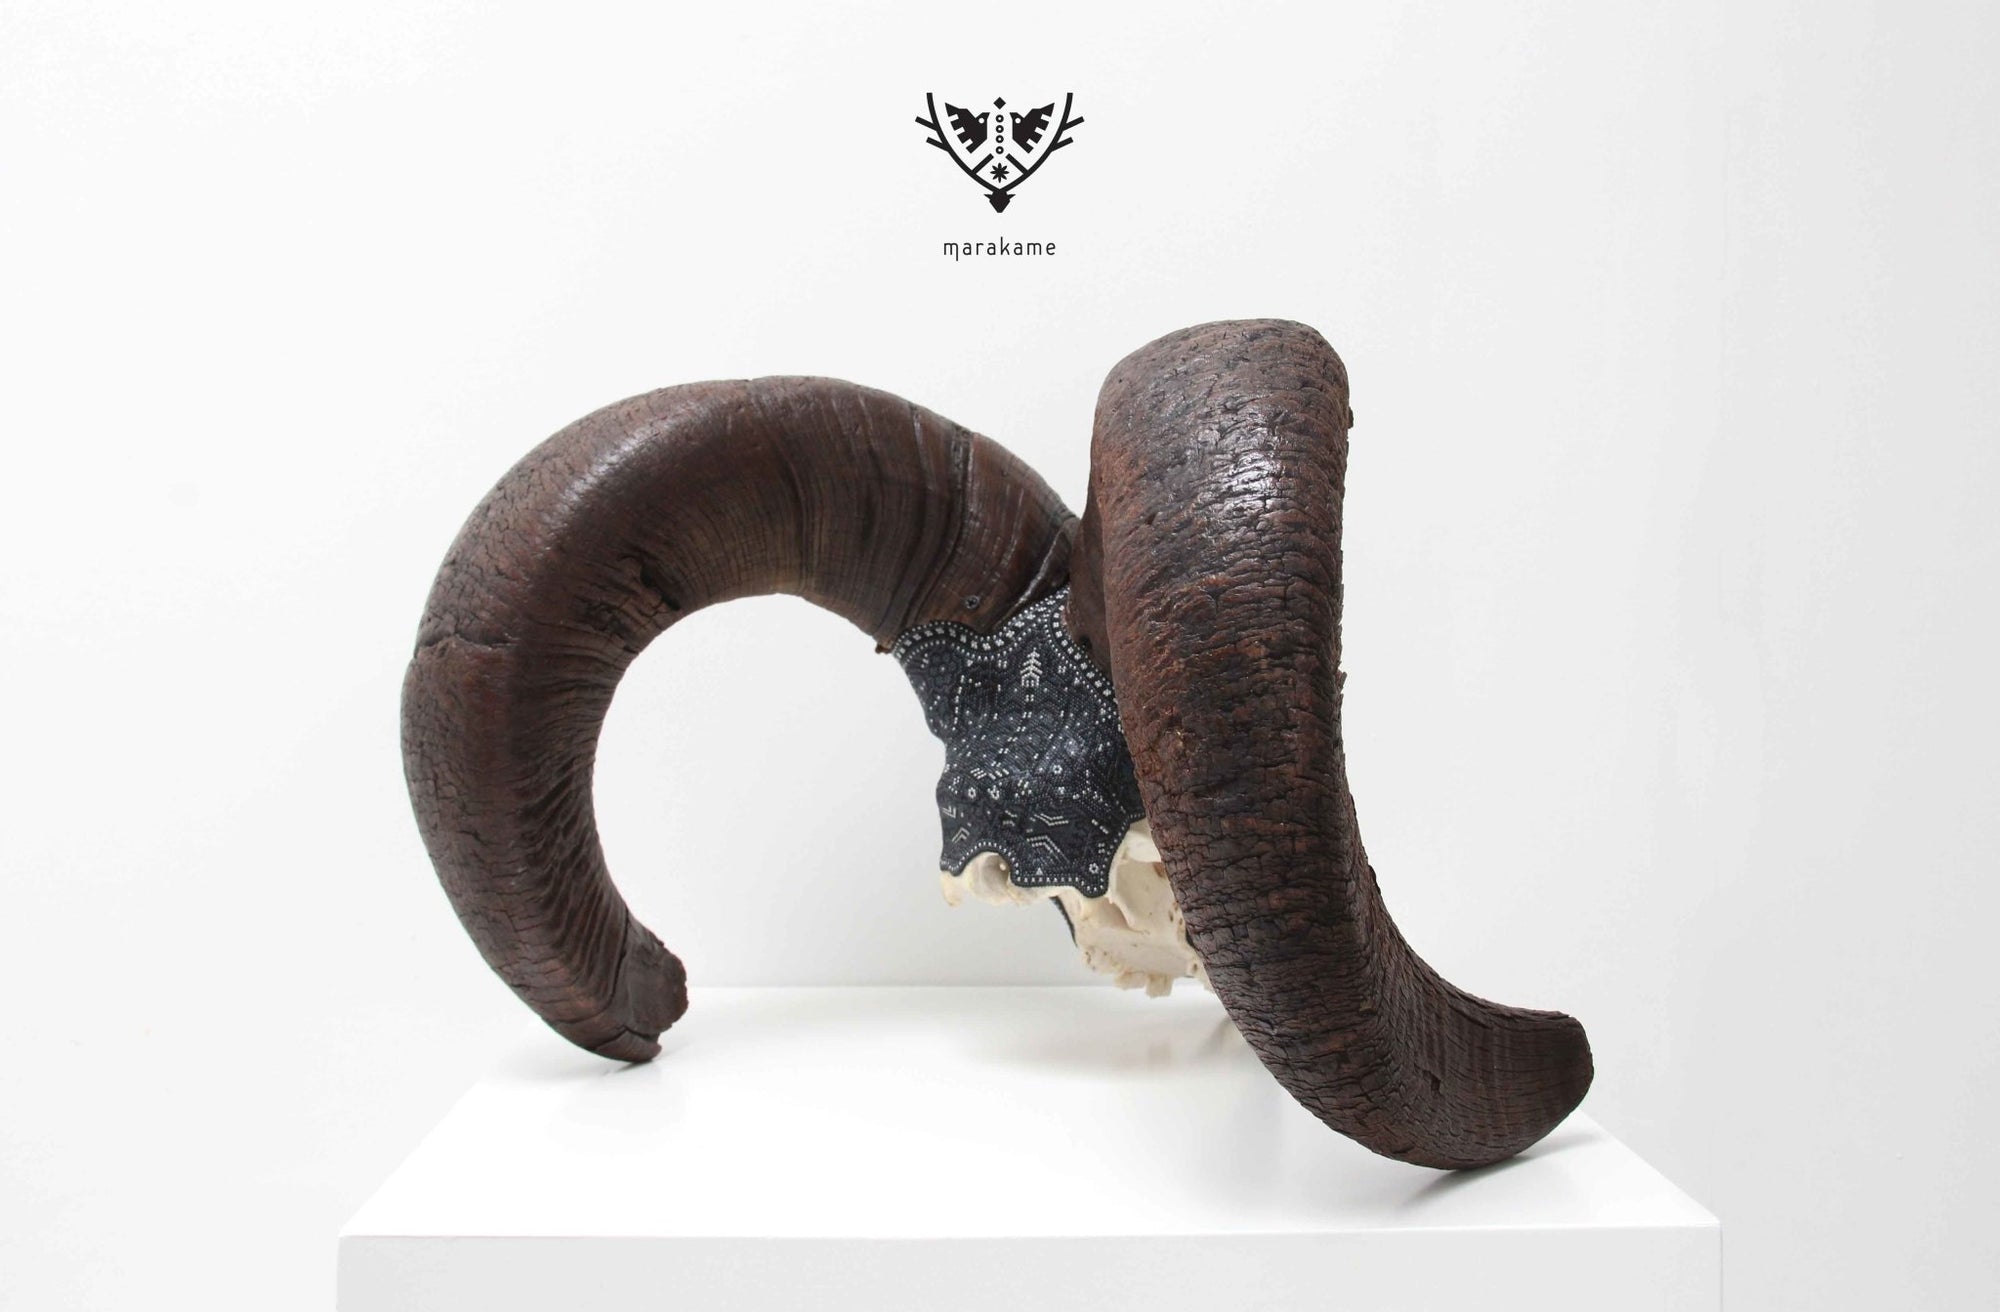 Crâne de mouflon d'Amérique authentique - K + pierita - Art Huichol - Marakame